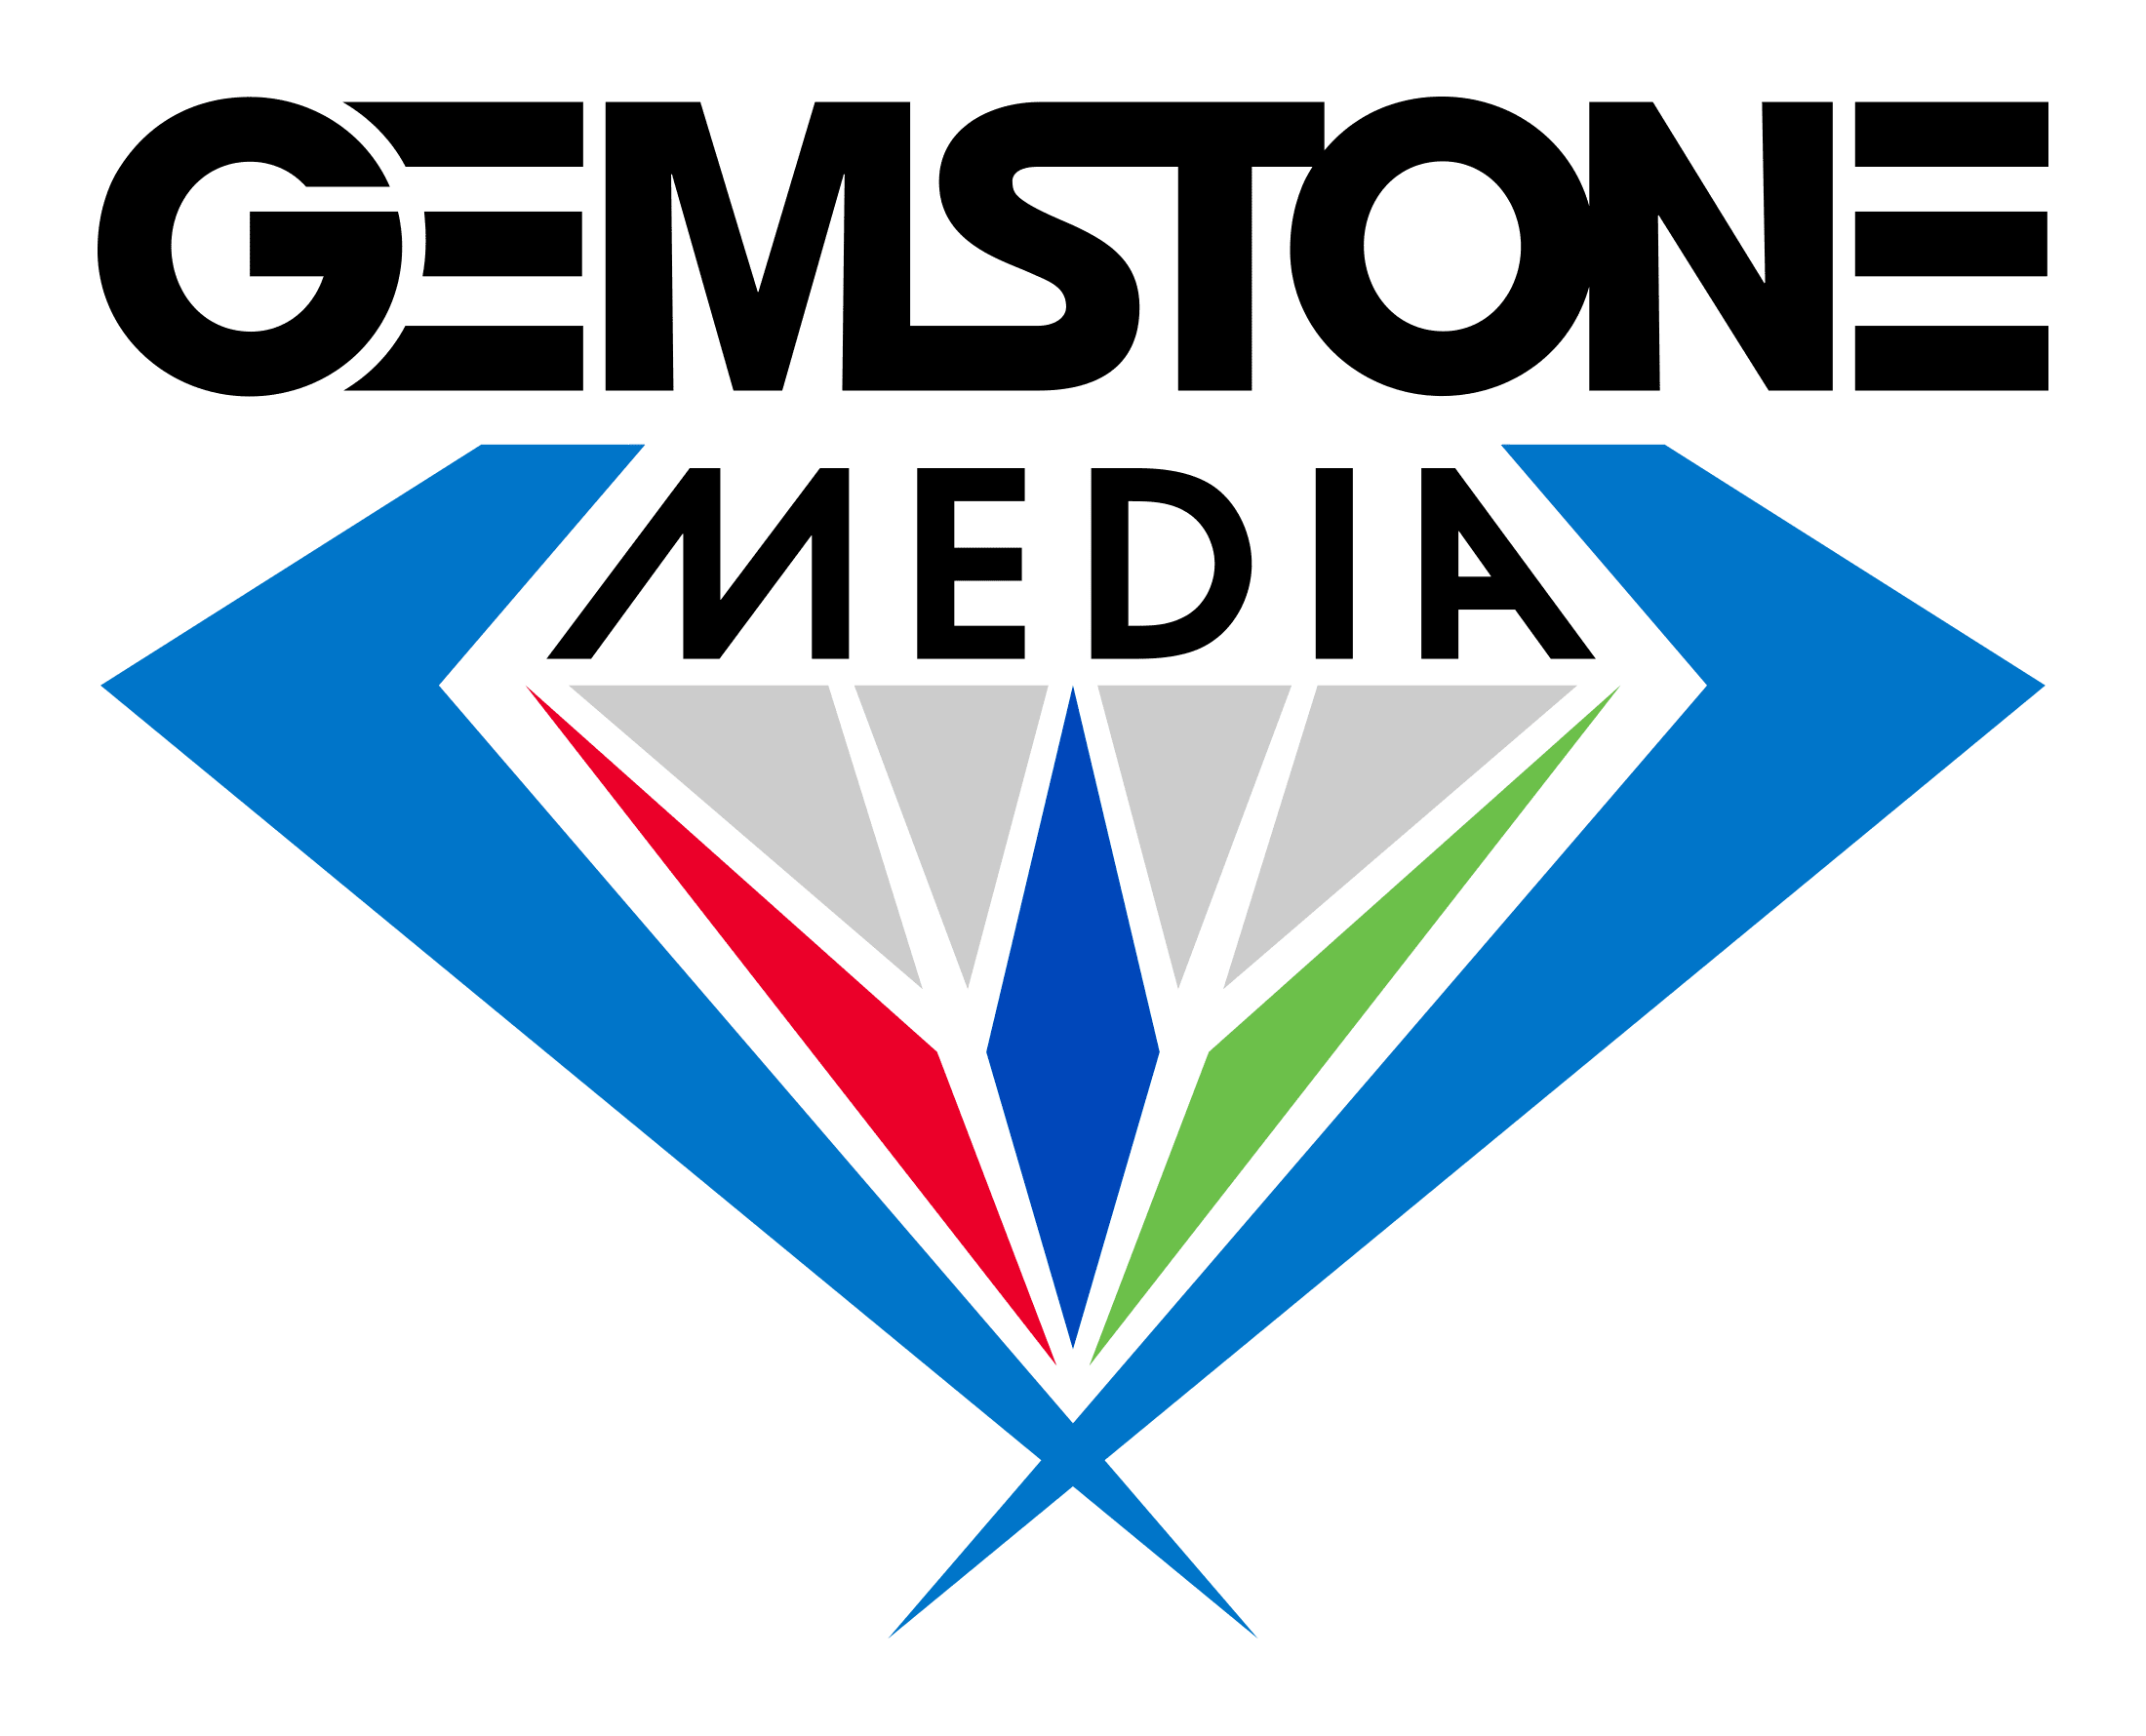 Gemstone Media